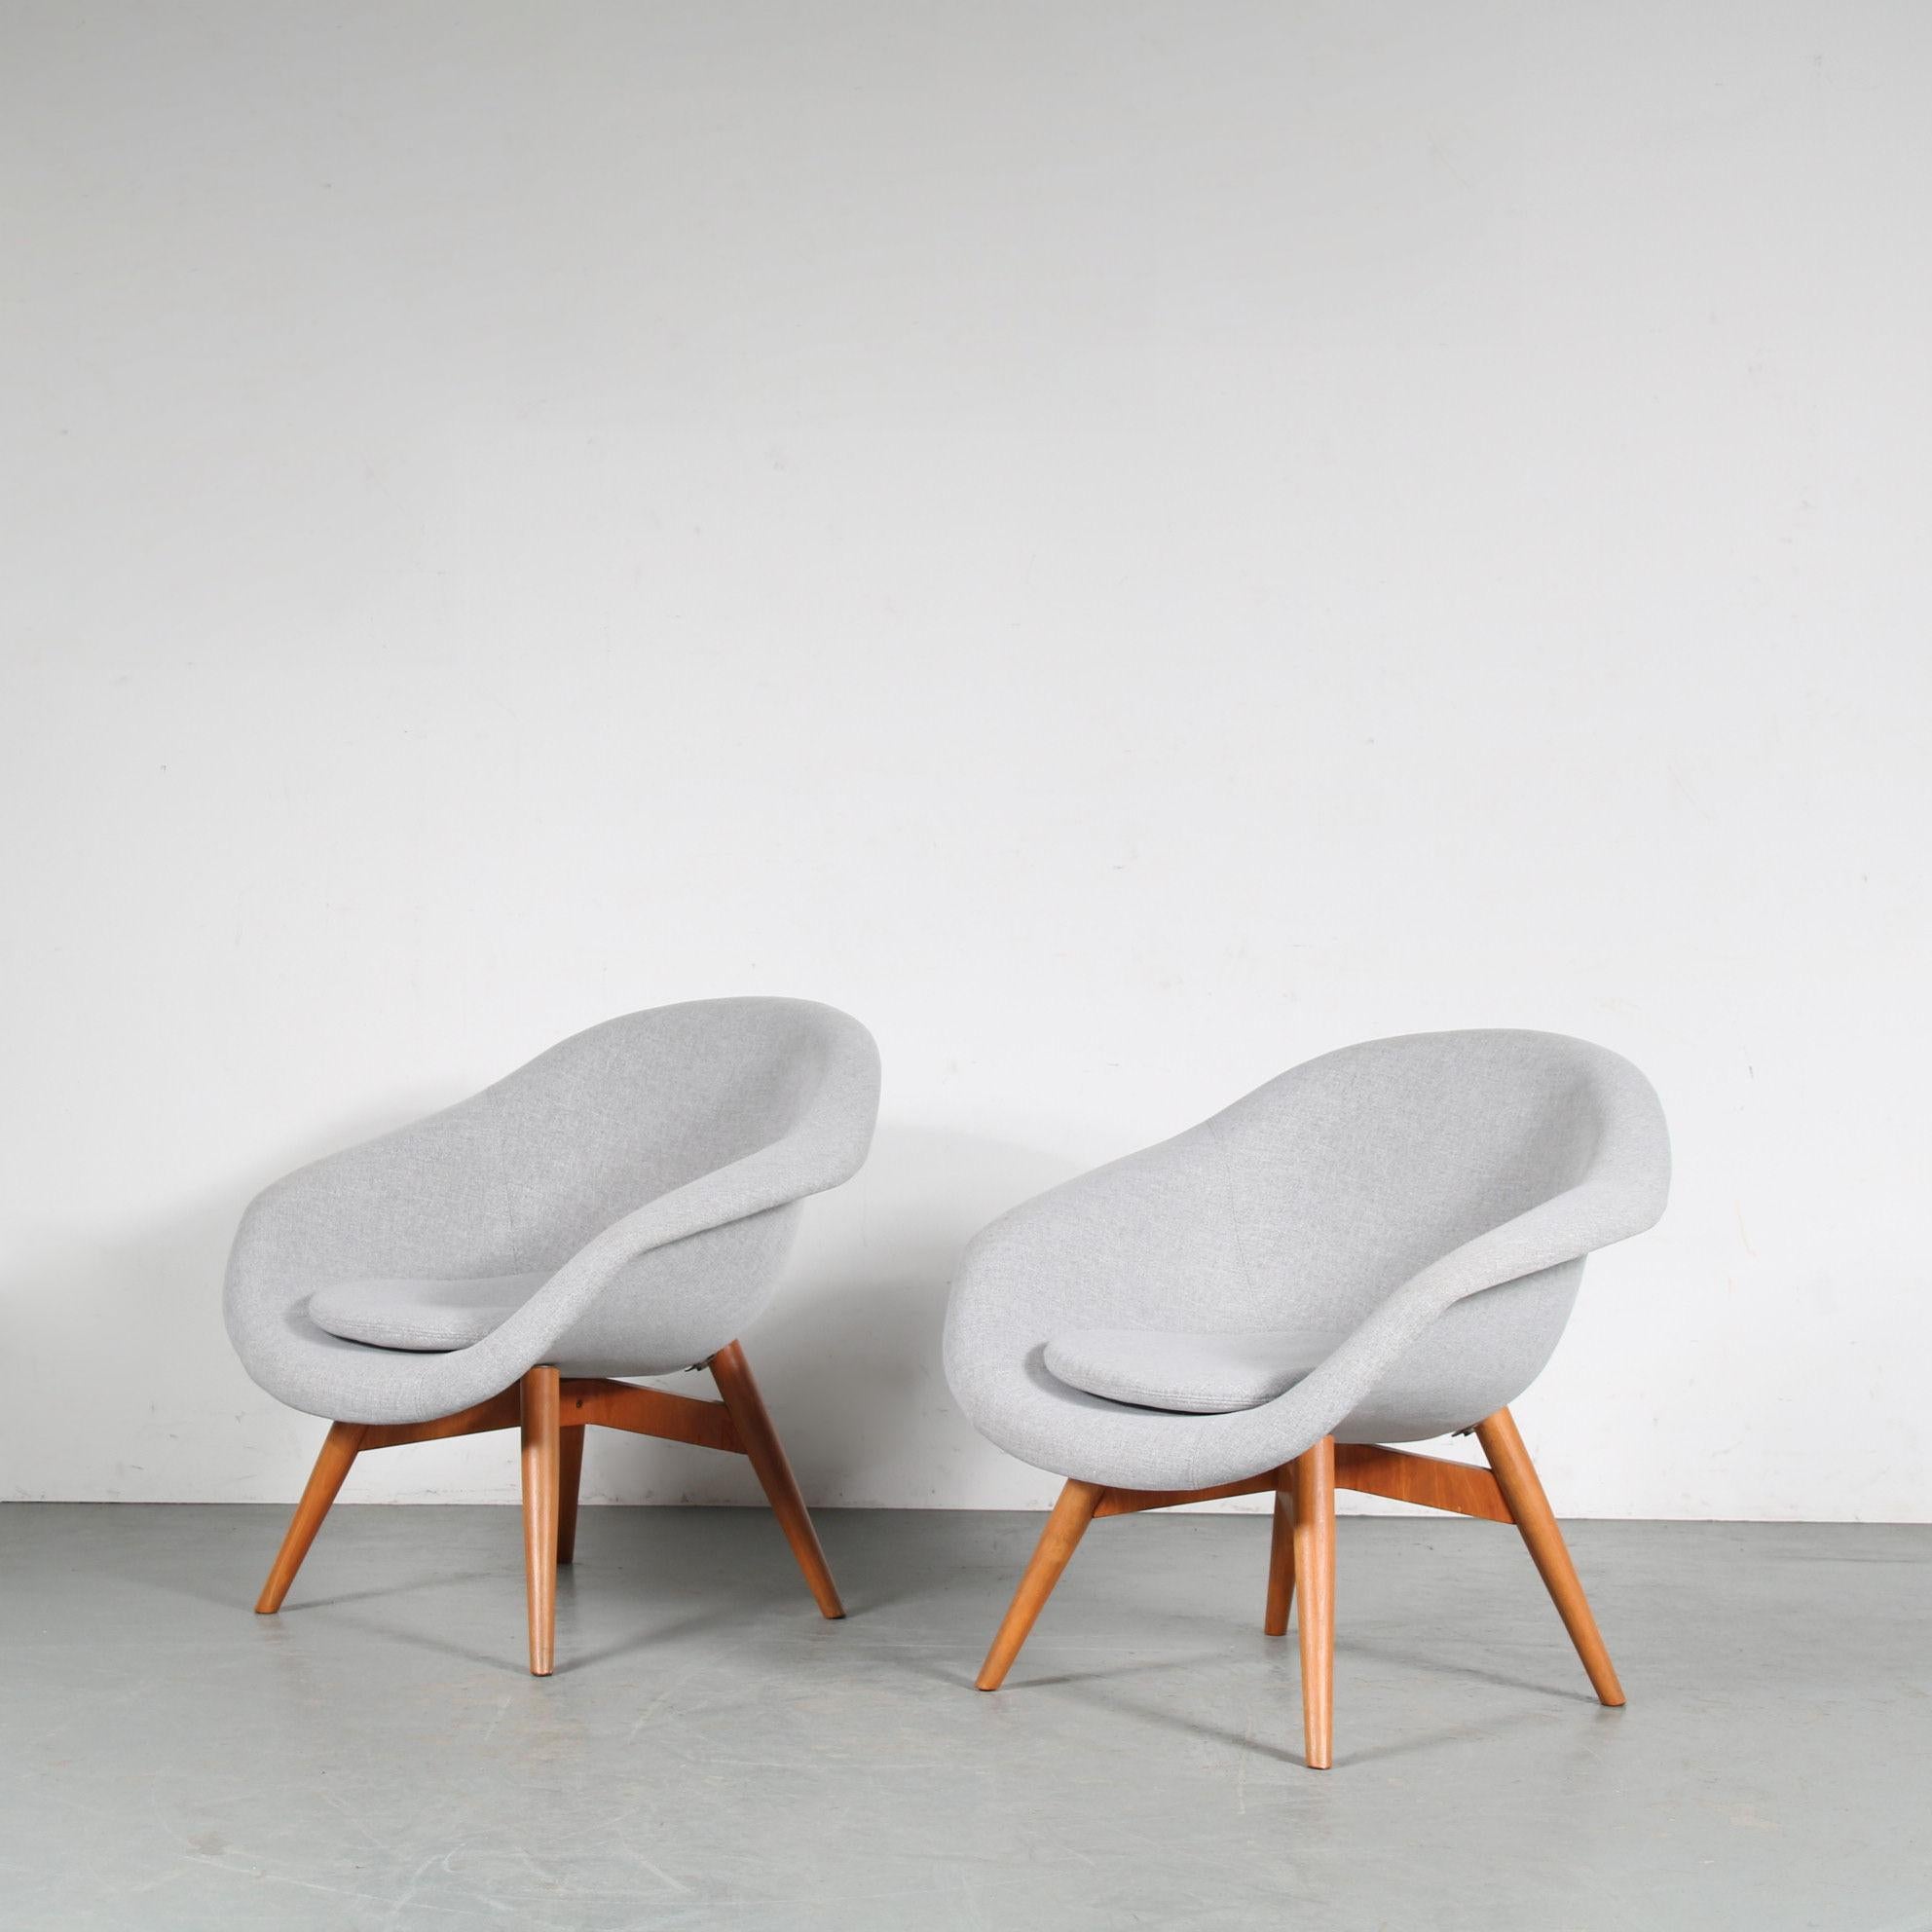 Ein fantastisches Paar Loungesessel, entworfen von Frantisek Jirak, hergestellt in der Tschechischen Republik um 1950.

Diese auffälligen Stühle haben ein Gestell aus hochwertigem Buchenholz in einem schönen, warmen Braunton. Die spitz zulaufenden